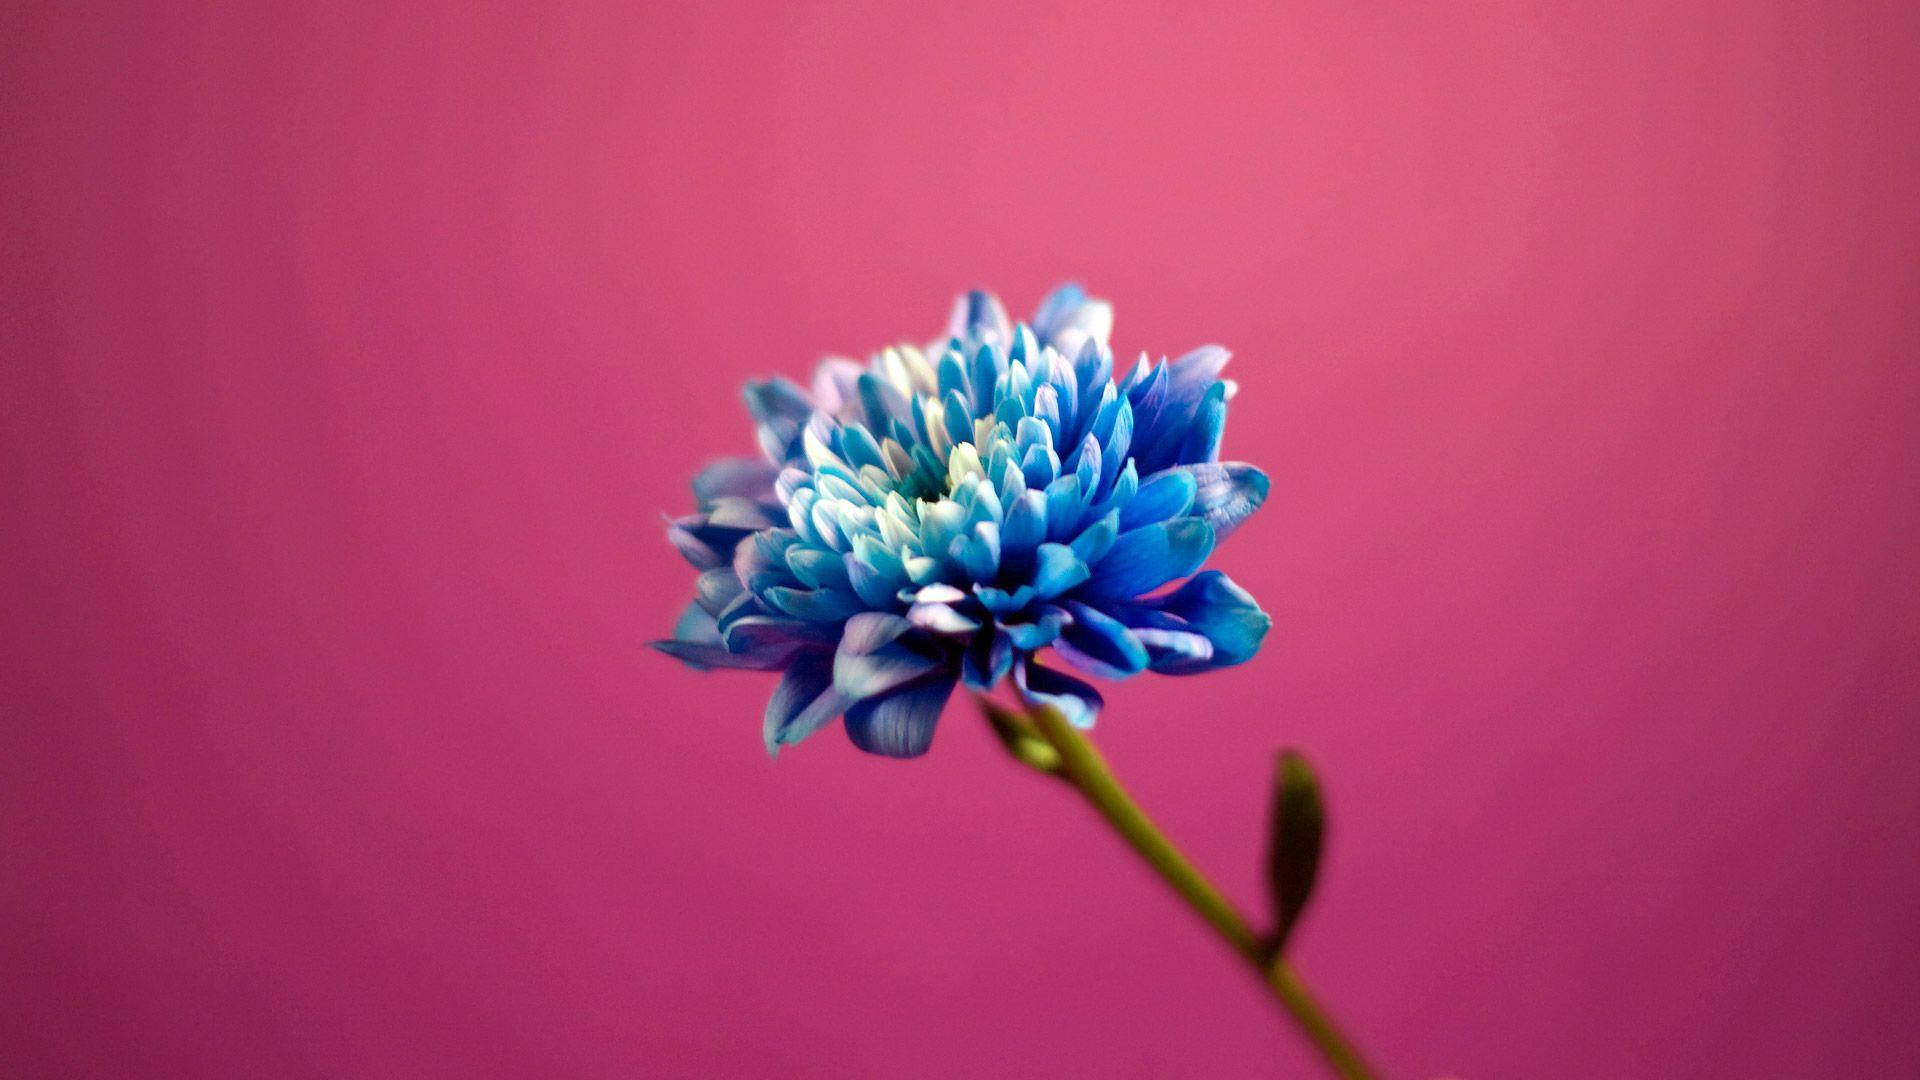 Blue Flower On Pink